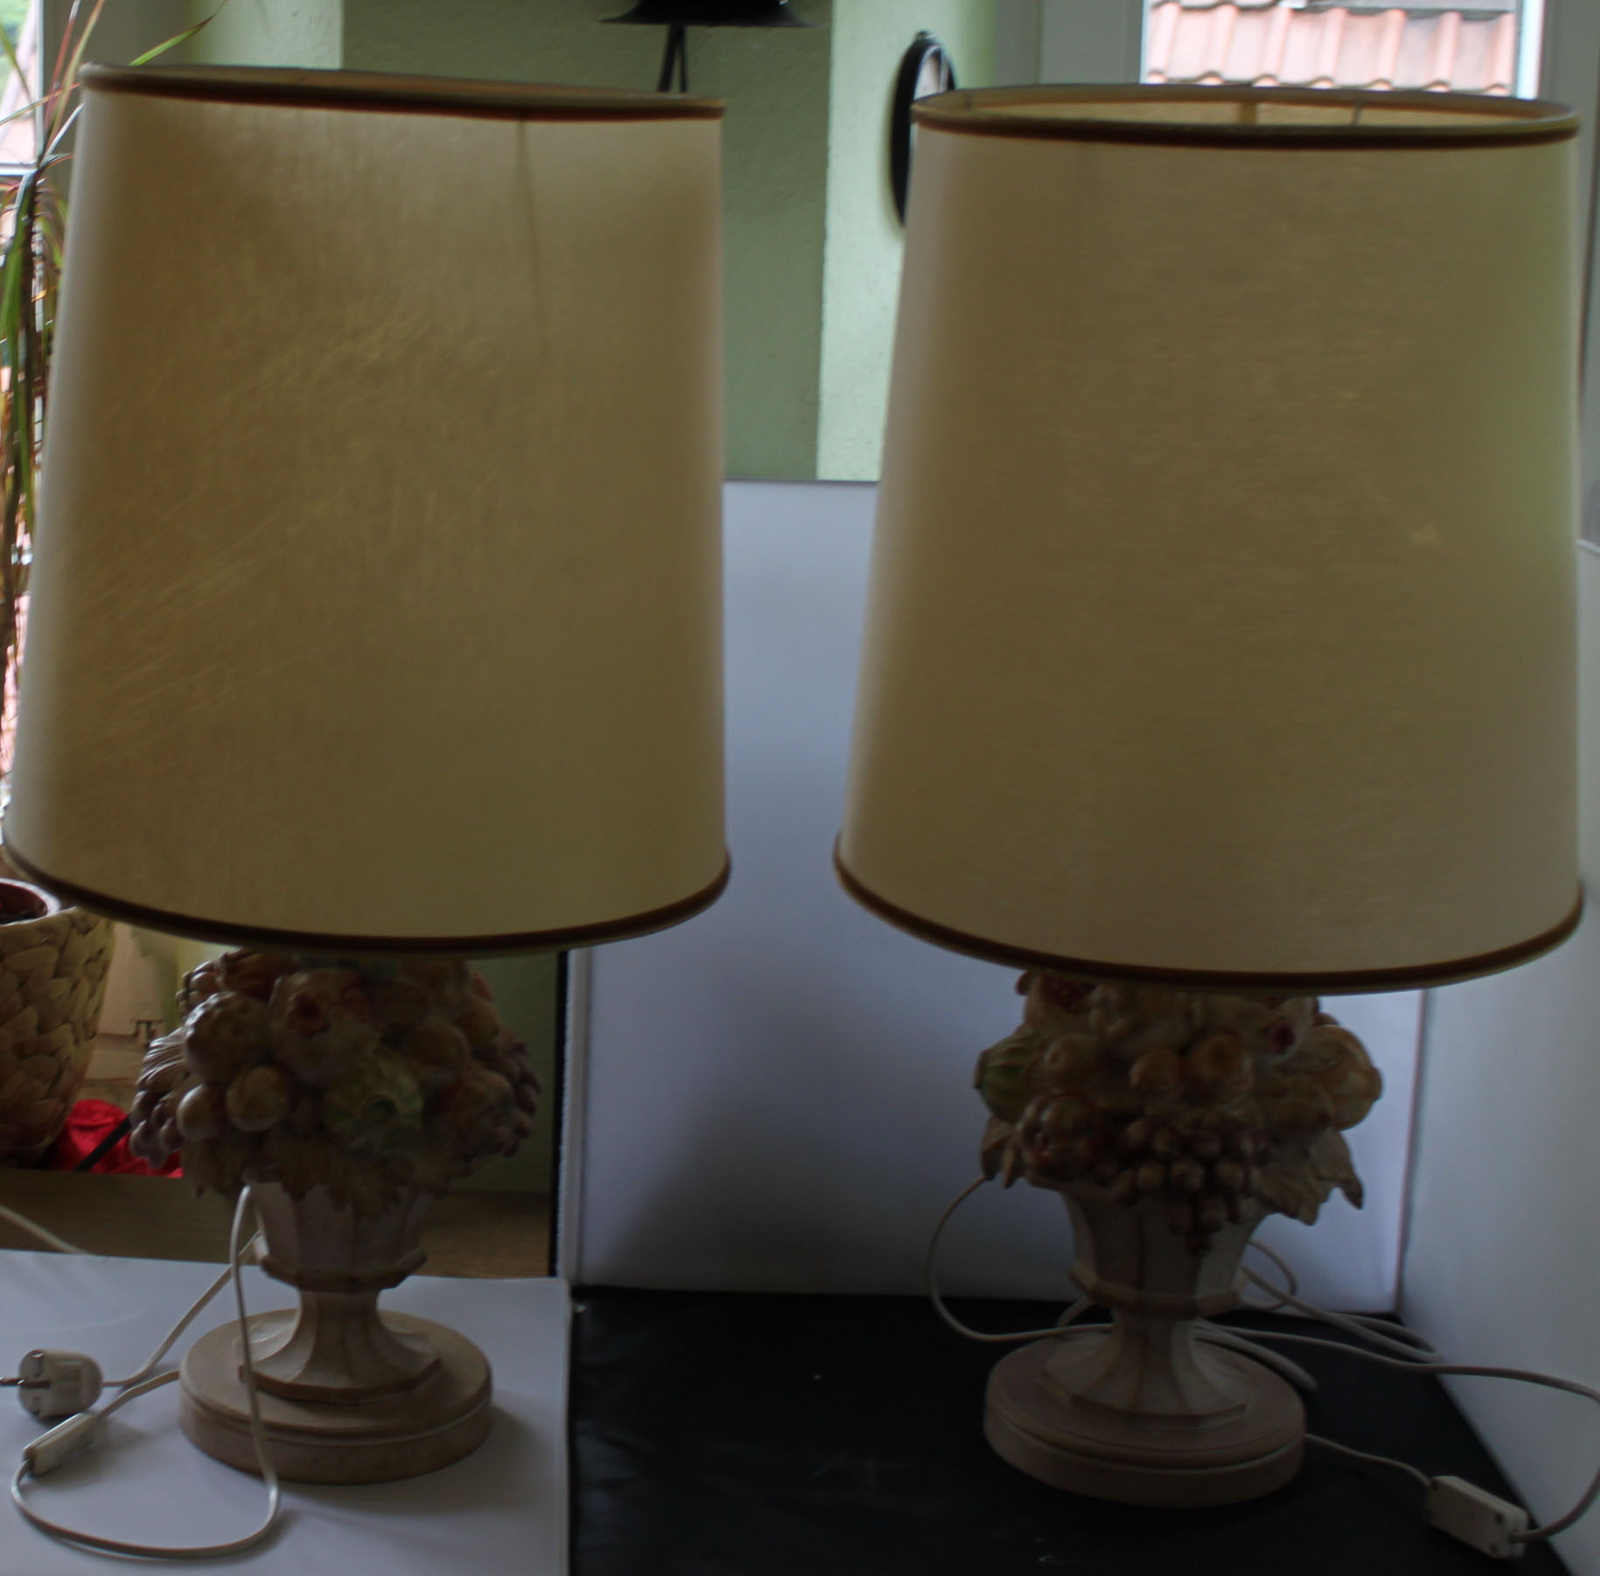 2 Tischlampen aus Holz "Obstkorb", Höhe ca. 75cm, mit Wechselschirmen, Funktion geprüftMindestpreis: